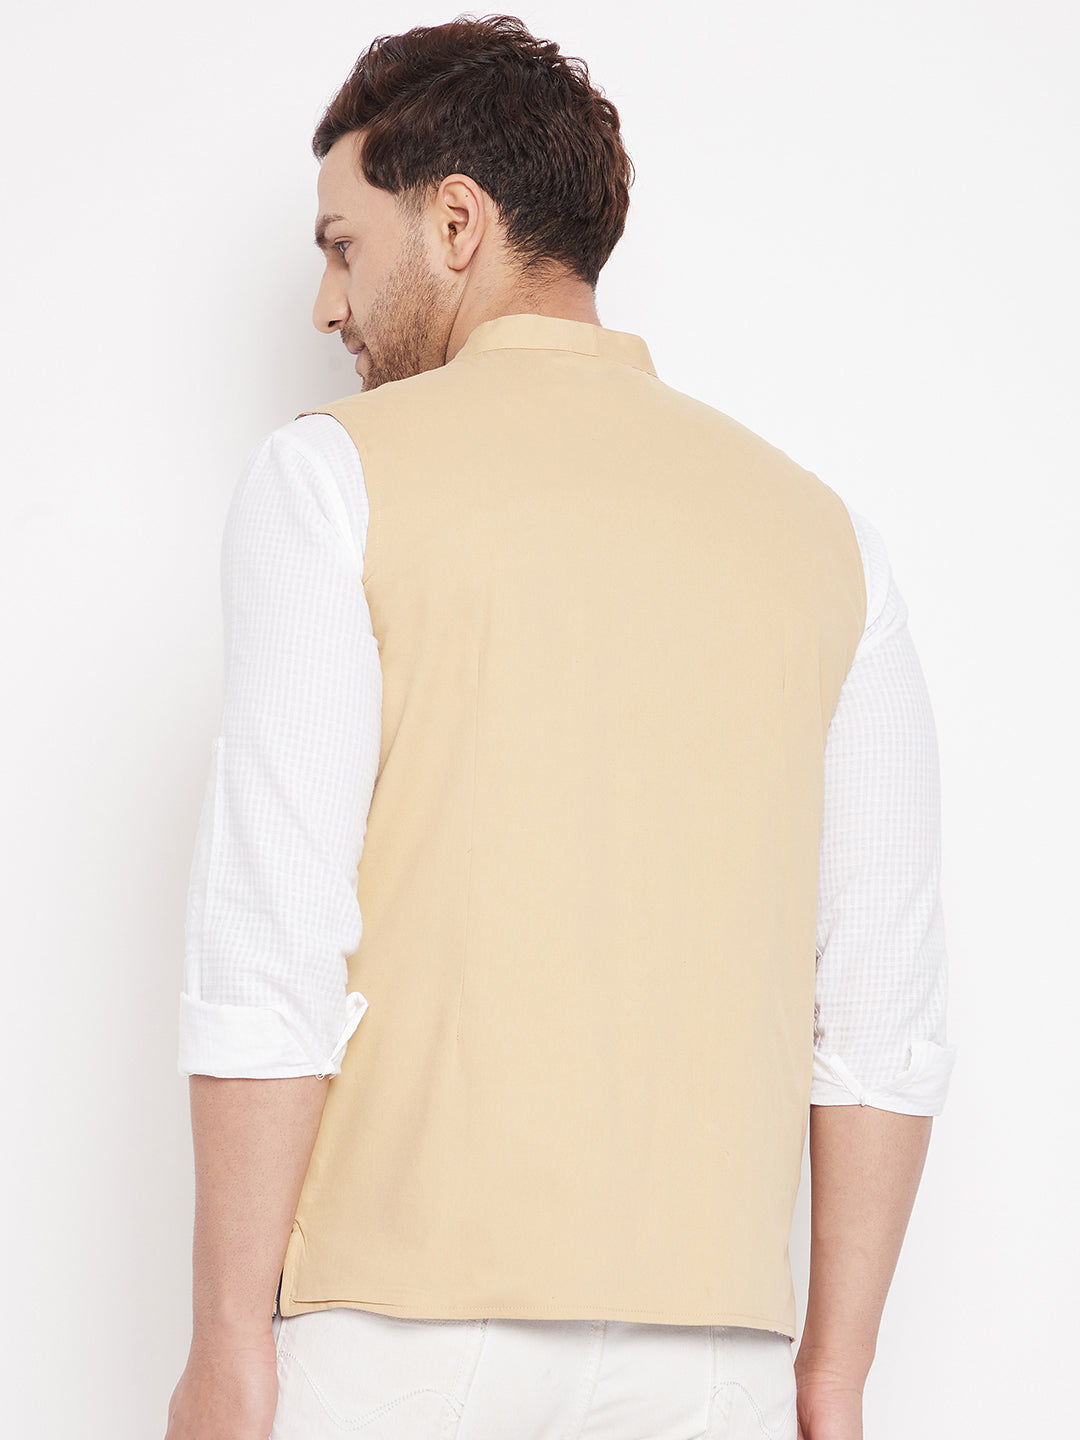 Men's Beige Color Nehru Jacket-Contrast Lining-Inbuilt Pocket Square - Even Apparels